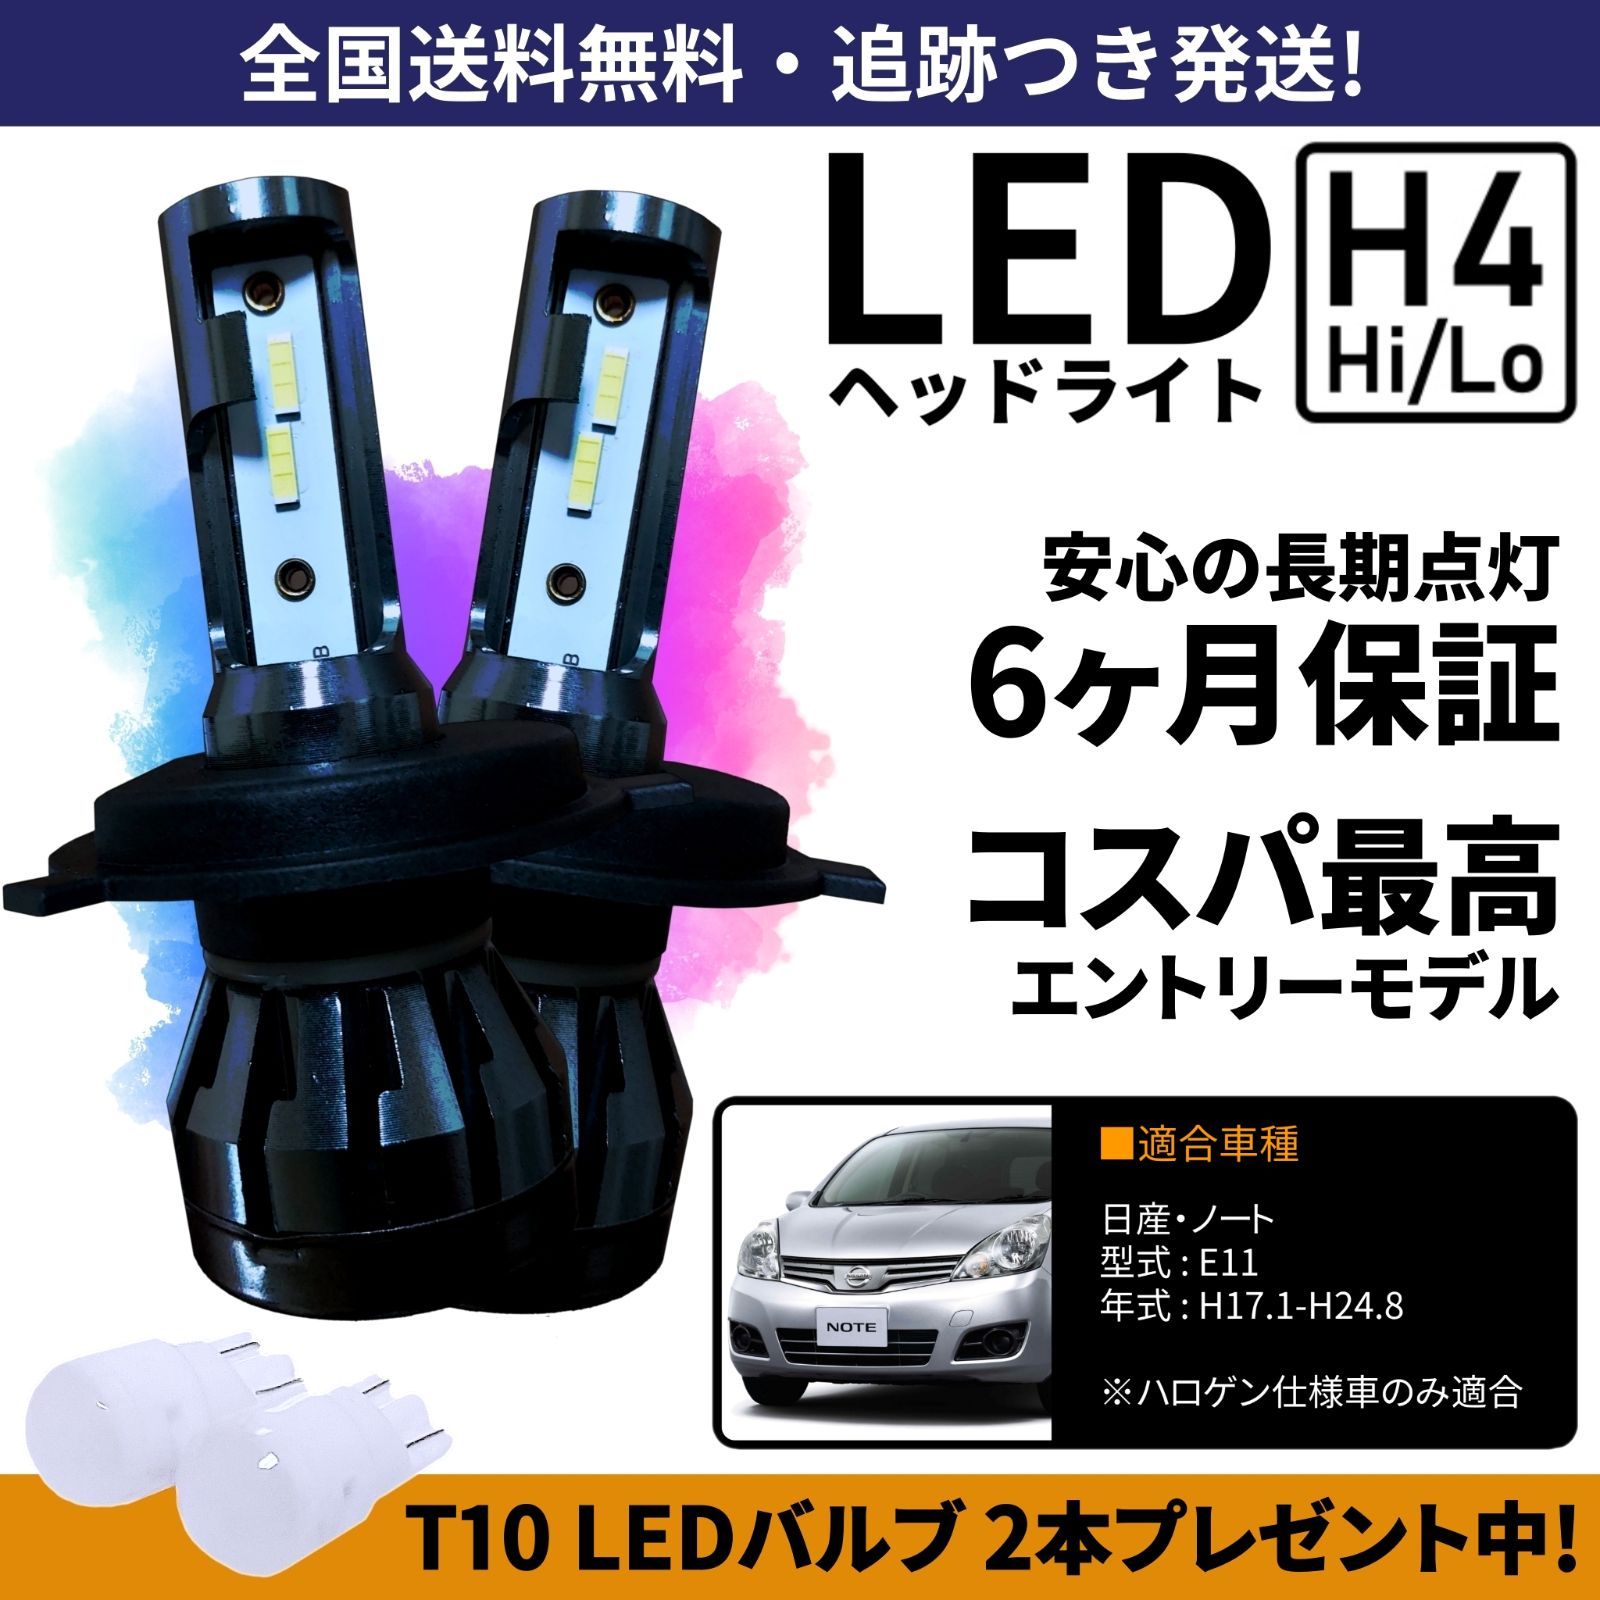 【送料無料】日産 ノート E11 LEDヘッドライト H4 Hi/Lo ホワイト 6000K 車検対応 保証付き